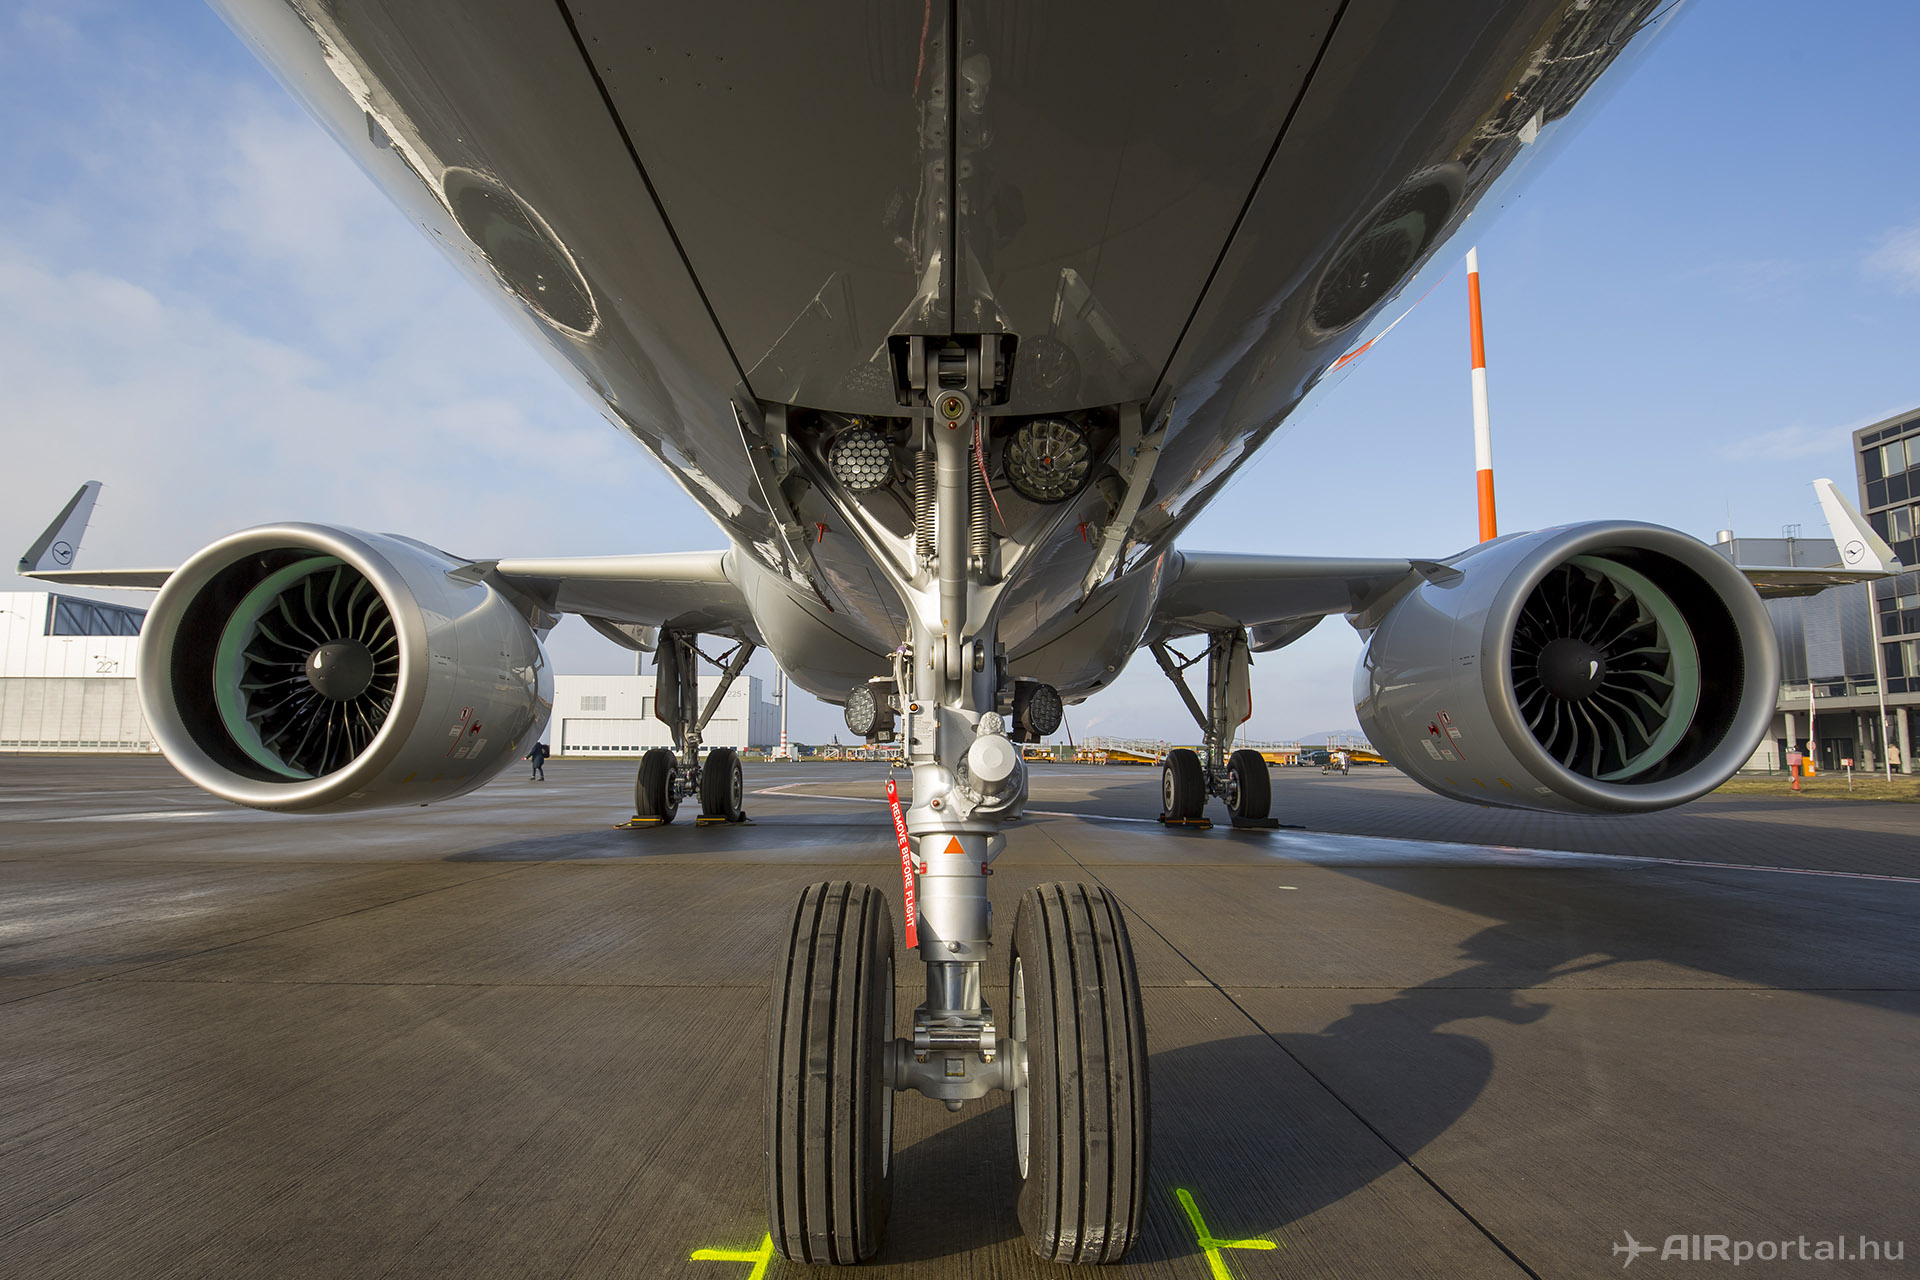 Hatalmas hajtóművek és sharkletek az A320neo különös ismertető jelei. | © AIRportal.hu